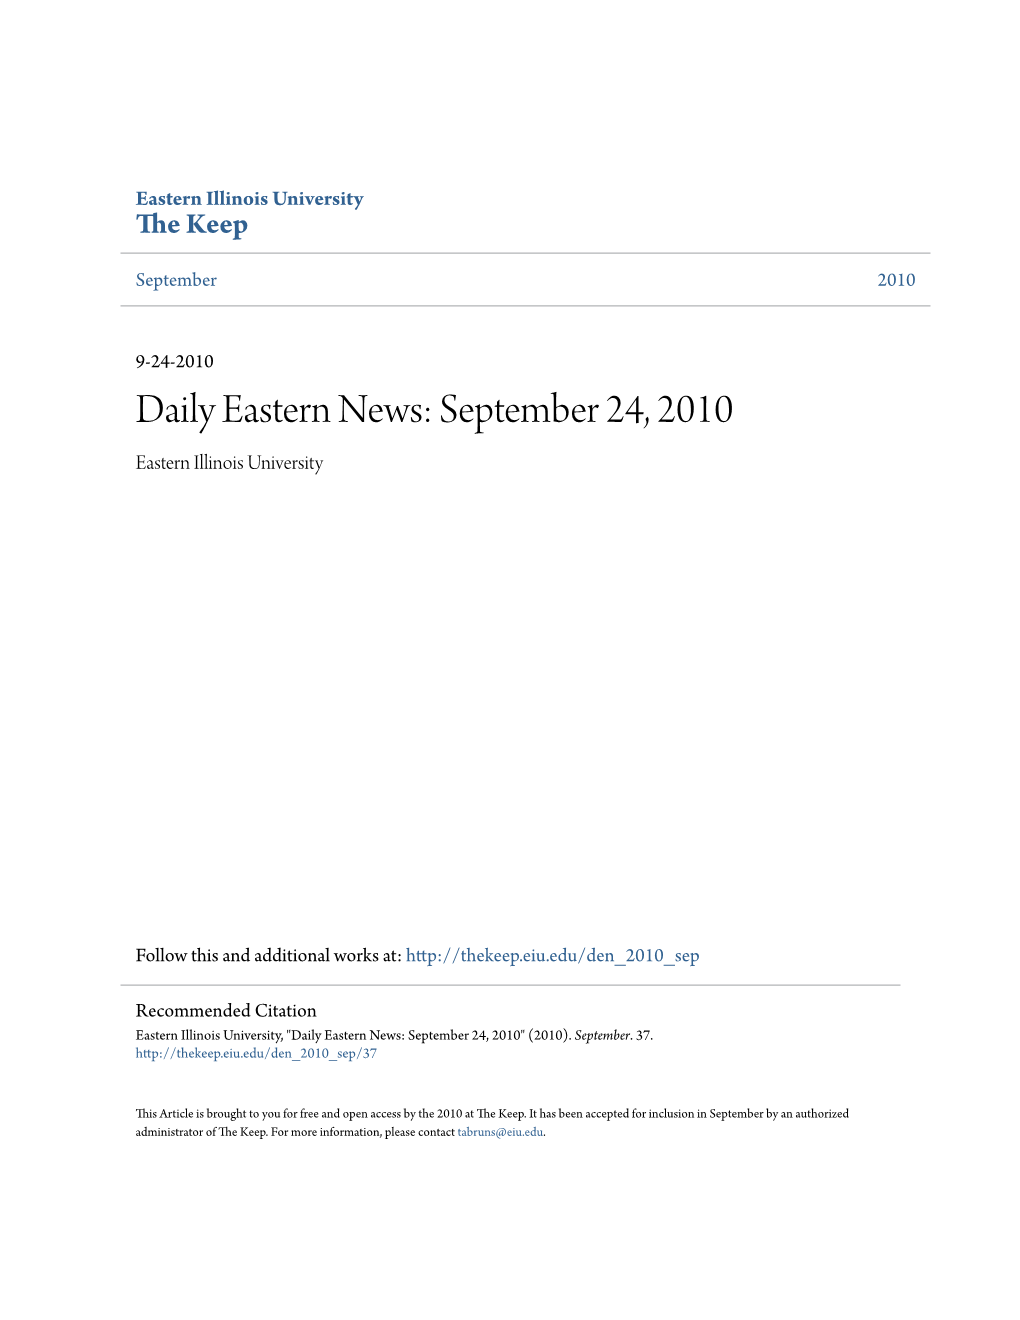 Eastern News: September 24, 2010 Eastern Illinois University